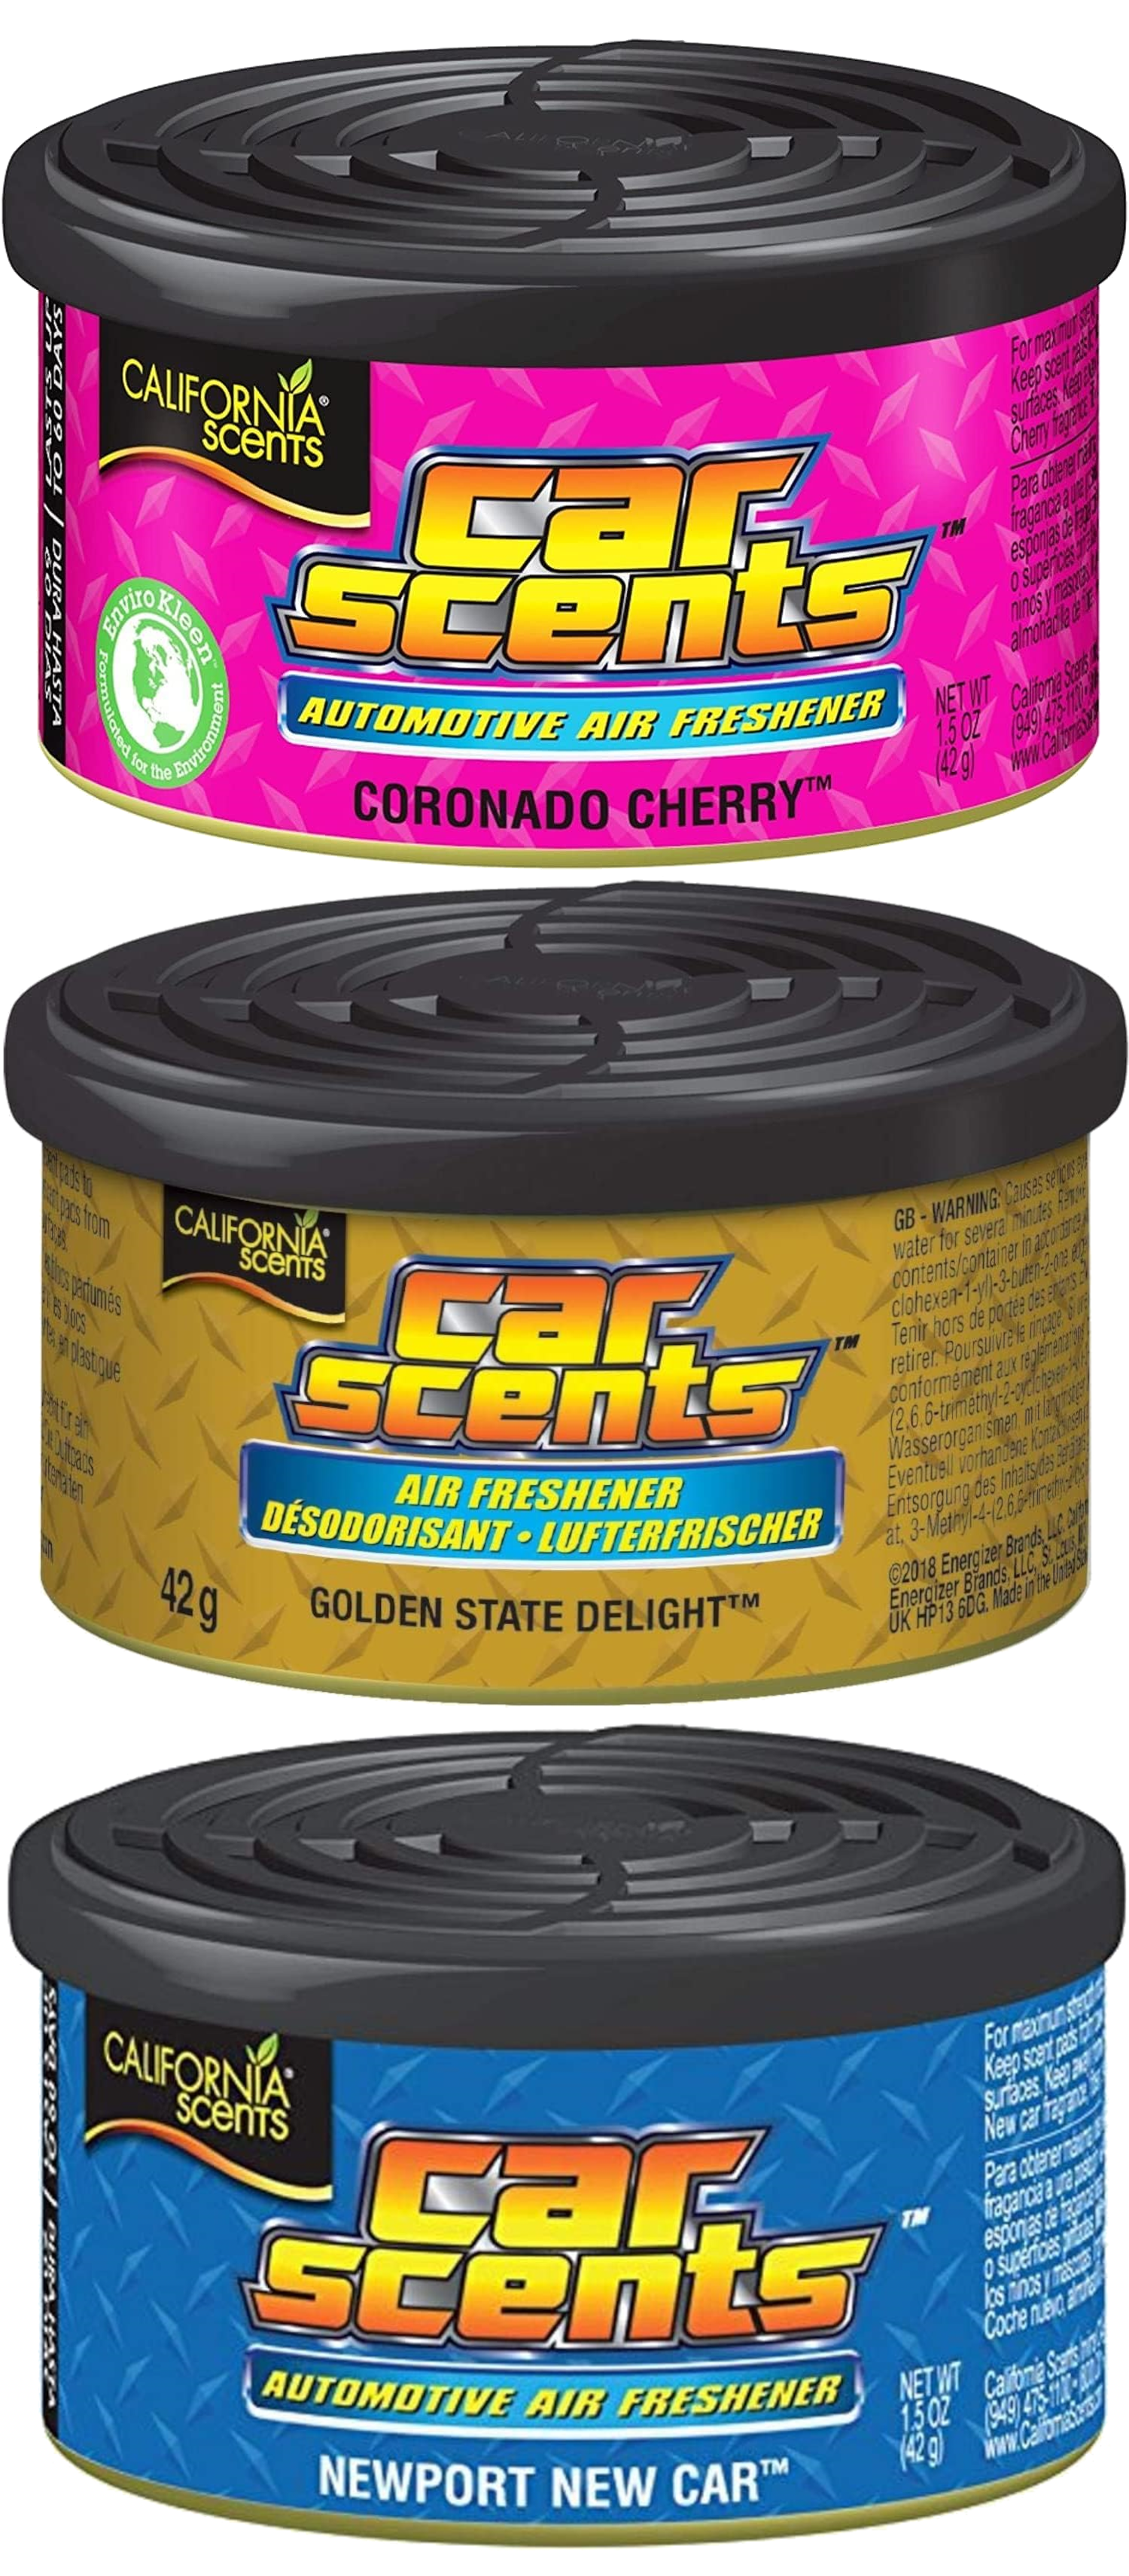 https://www.eu-bay.de/media/image/1f/62/d8/3x-california-scents-car-scents-coronado-cherry-golden-state-248030.png